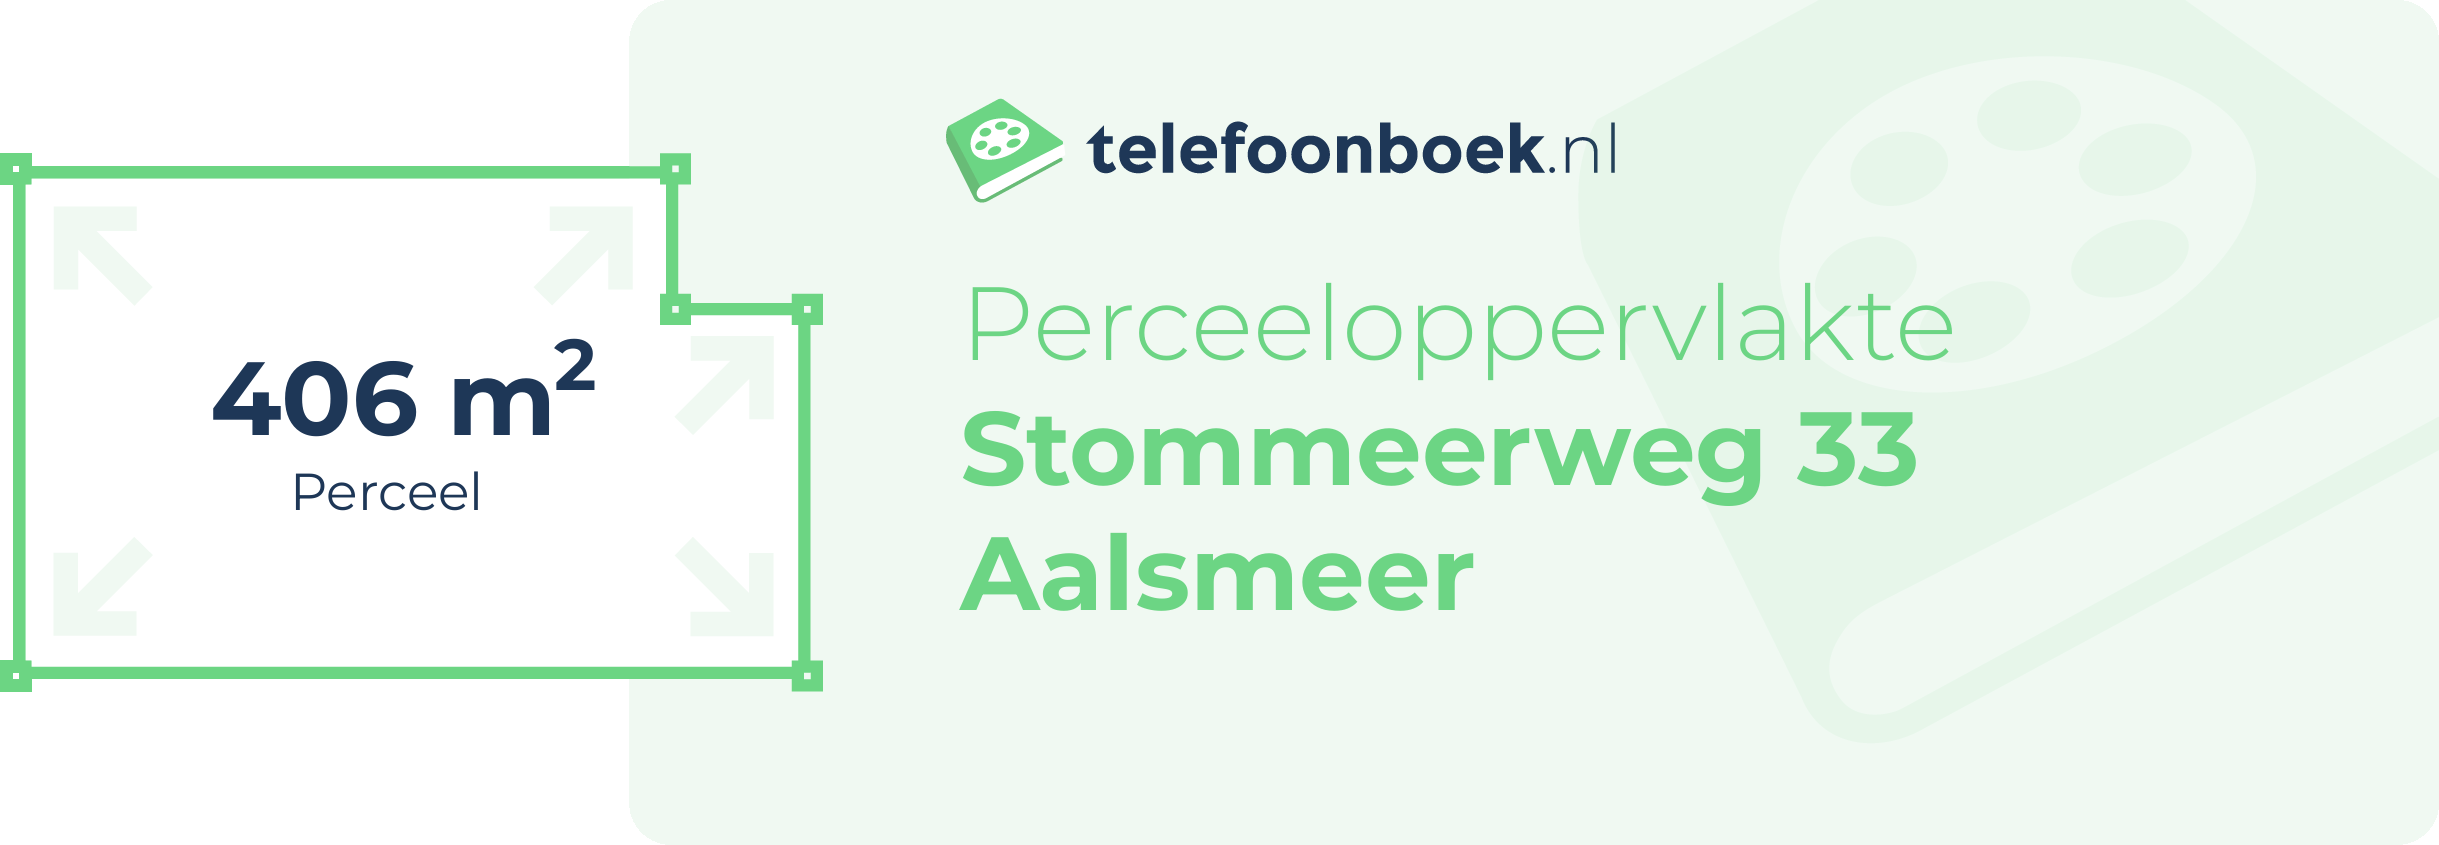 Perceeloppervlakte Stommeerweg 33 Aalsmeer